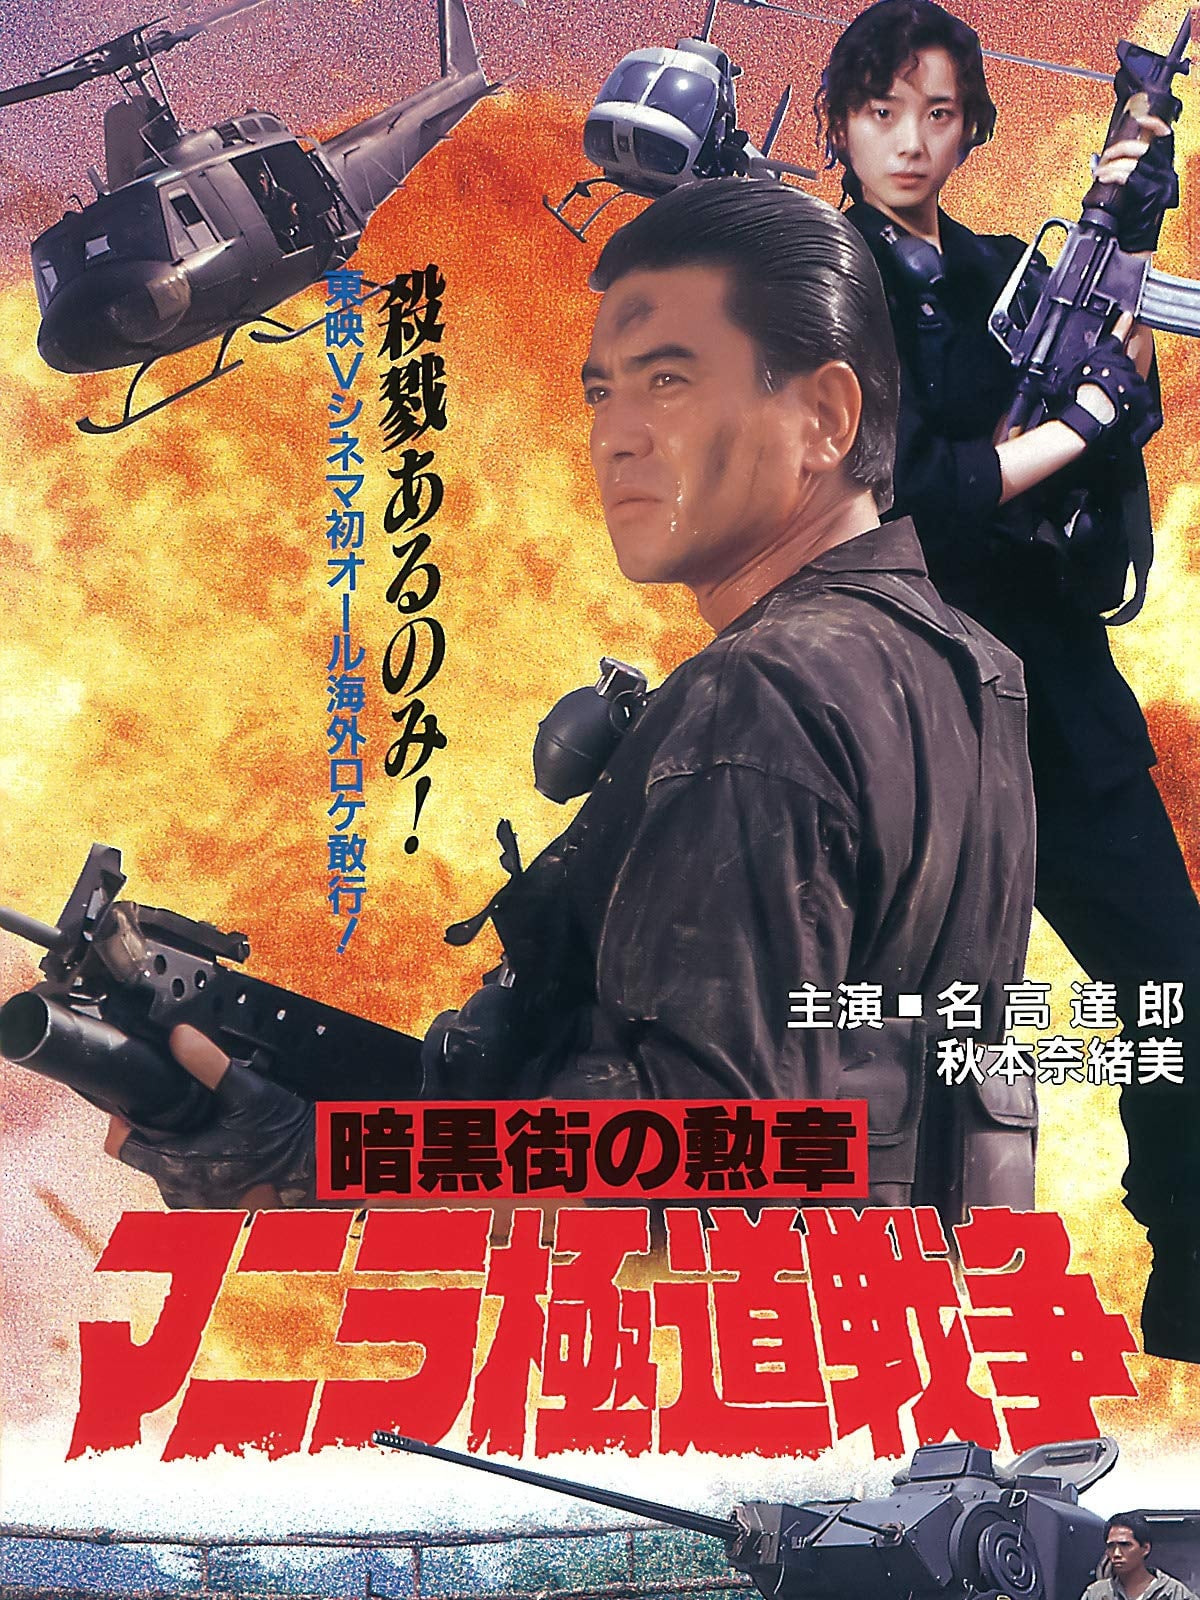 Manila Gokudo Wars (1993)